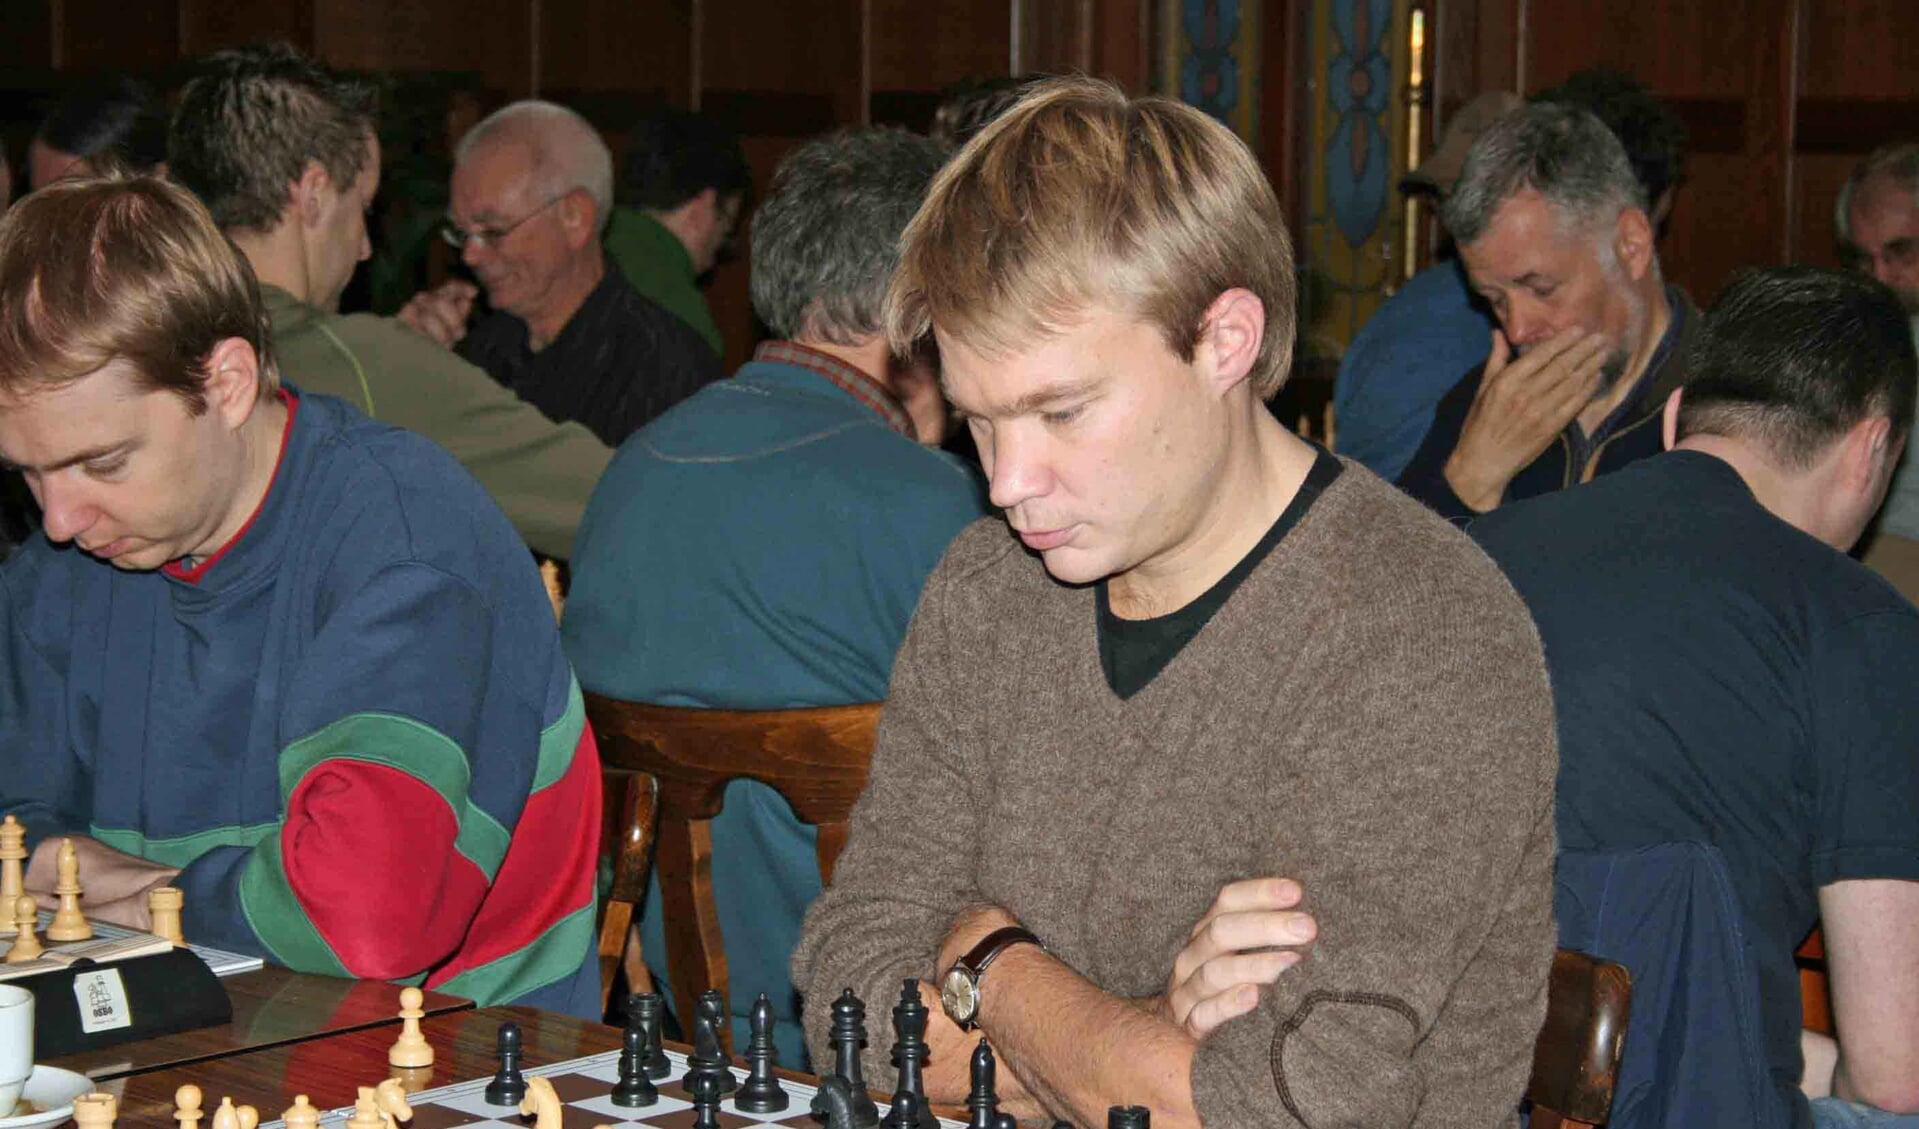 De toernooiwinnaar van het Kiste Trui Toernooi 1994, Nyika Kruyt.